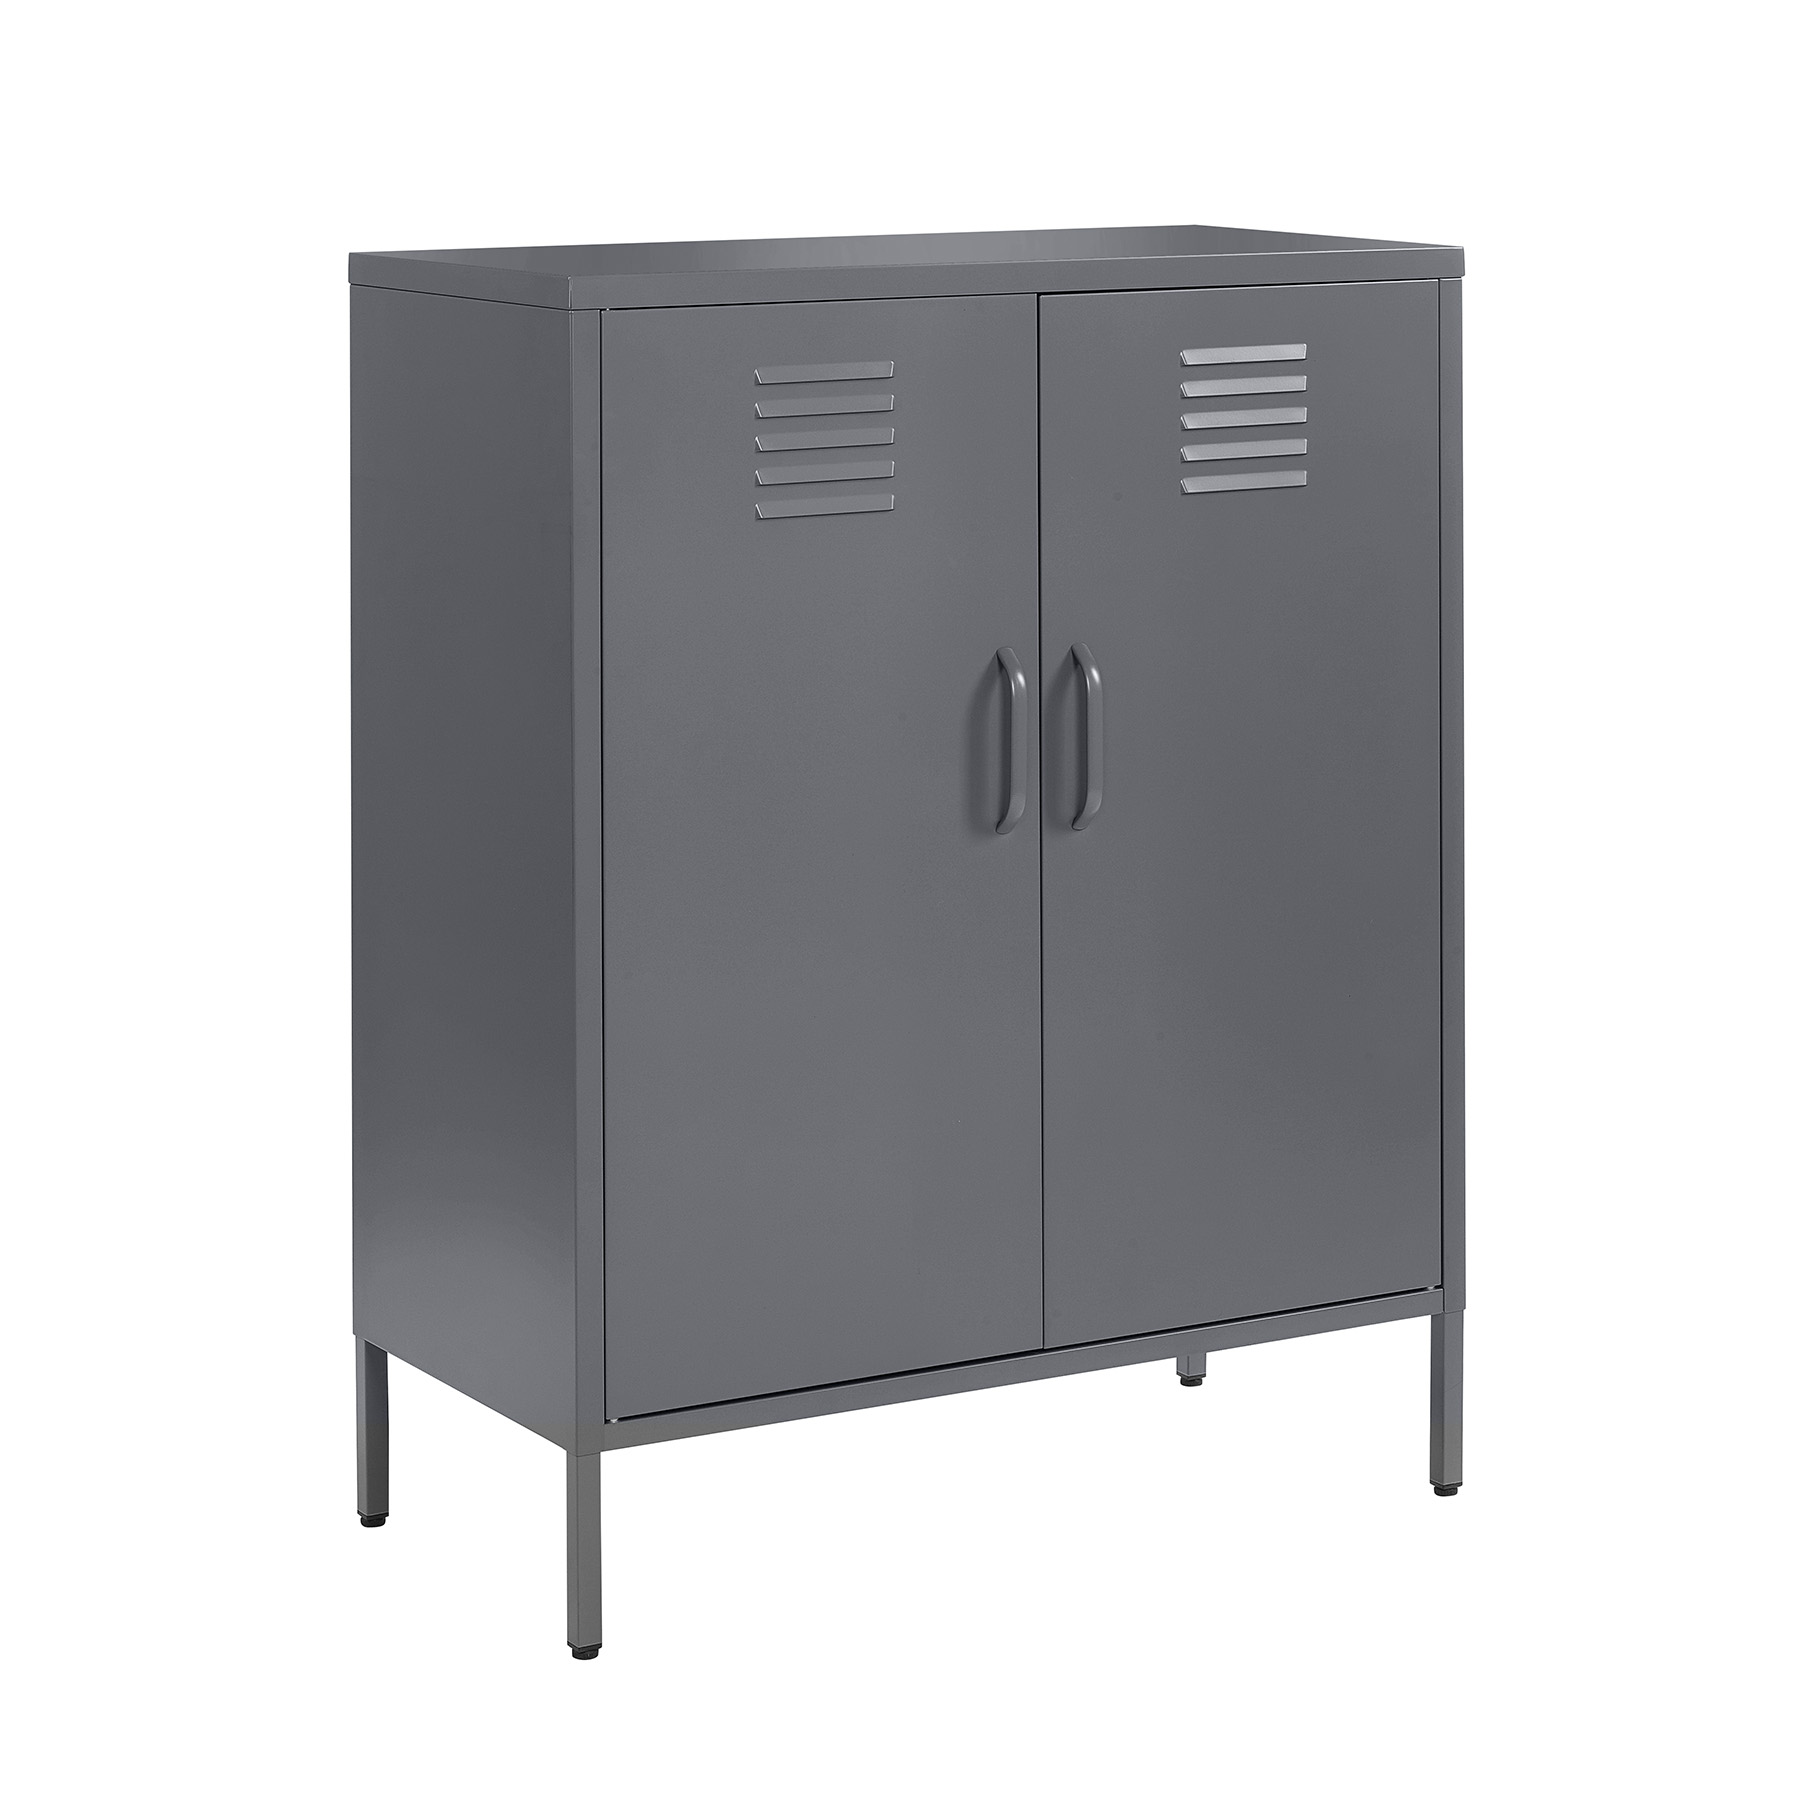 st 01 grey 2 door metal storage cabinet 1010mm